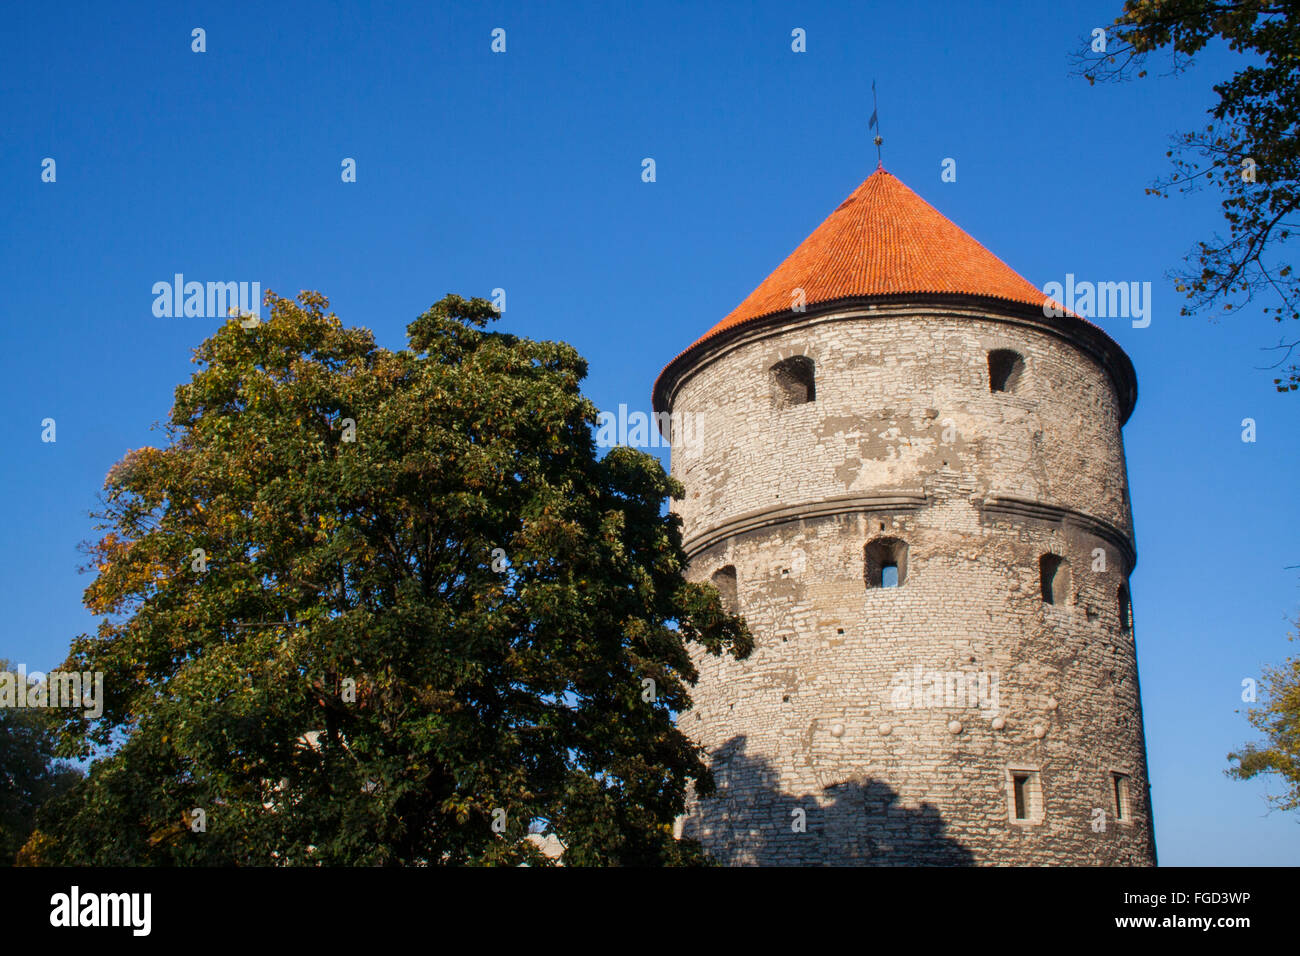 Kiek in de Kök cannon tower, Tallinn, Estonia Stock Photo